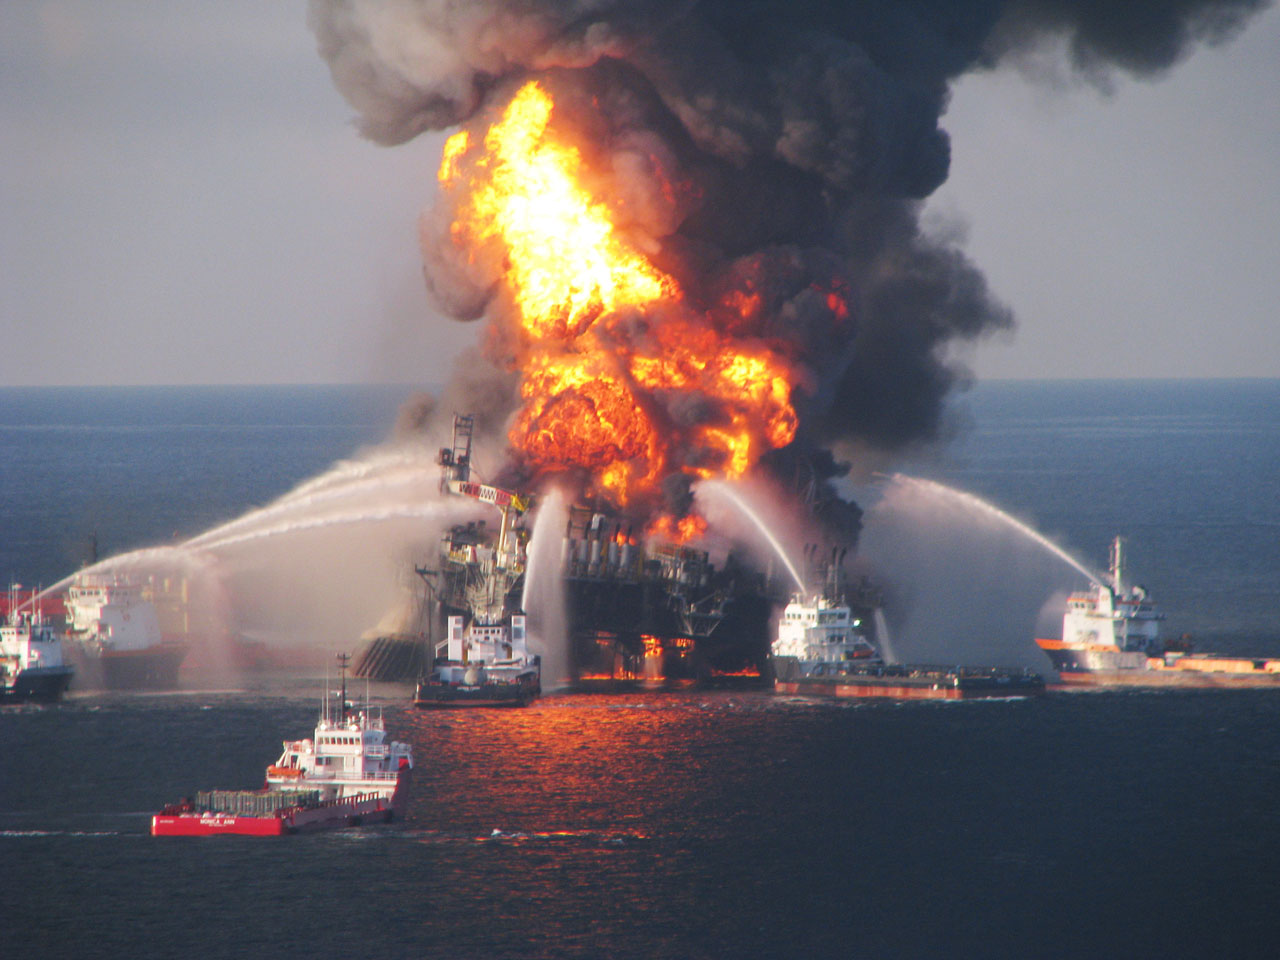 Bp The Deepwater Horizon Oil Spill Of